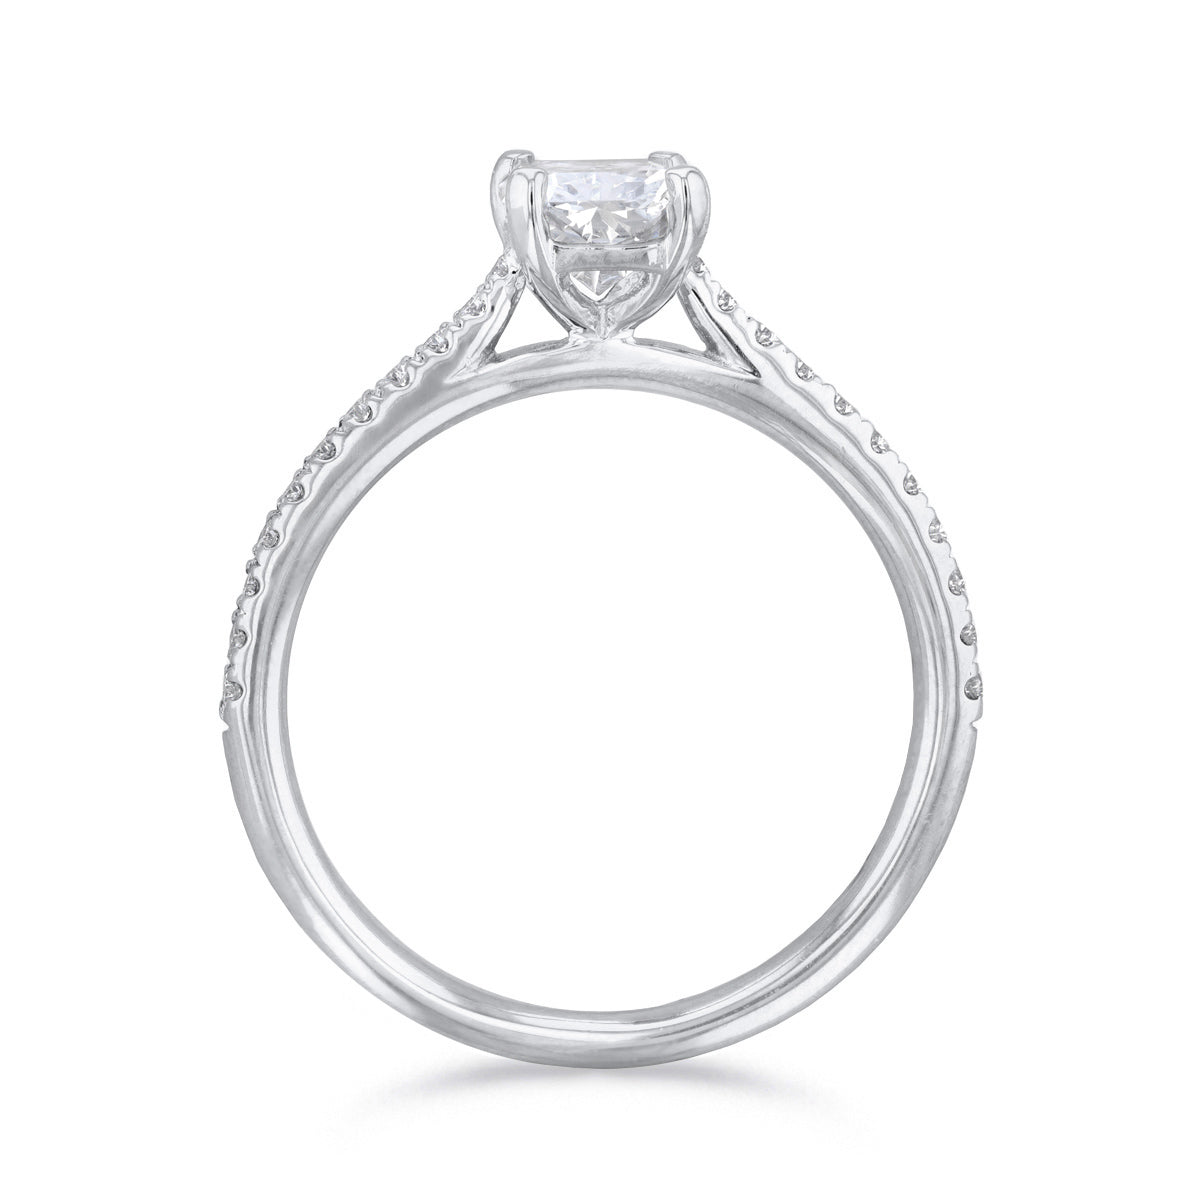 0-50ct-ophelia-shoulder-set-radiant-cut-solitaire-diamond-engagement-ring-platinum